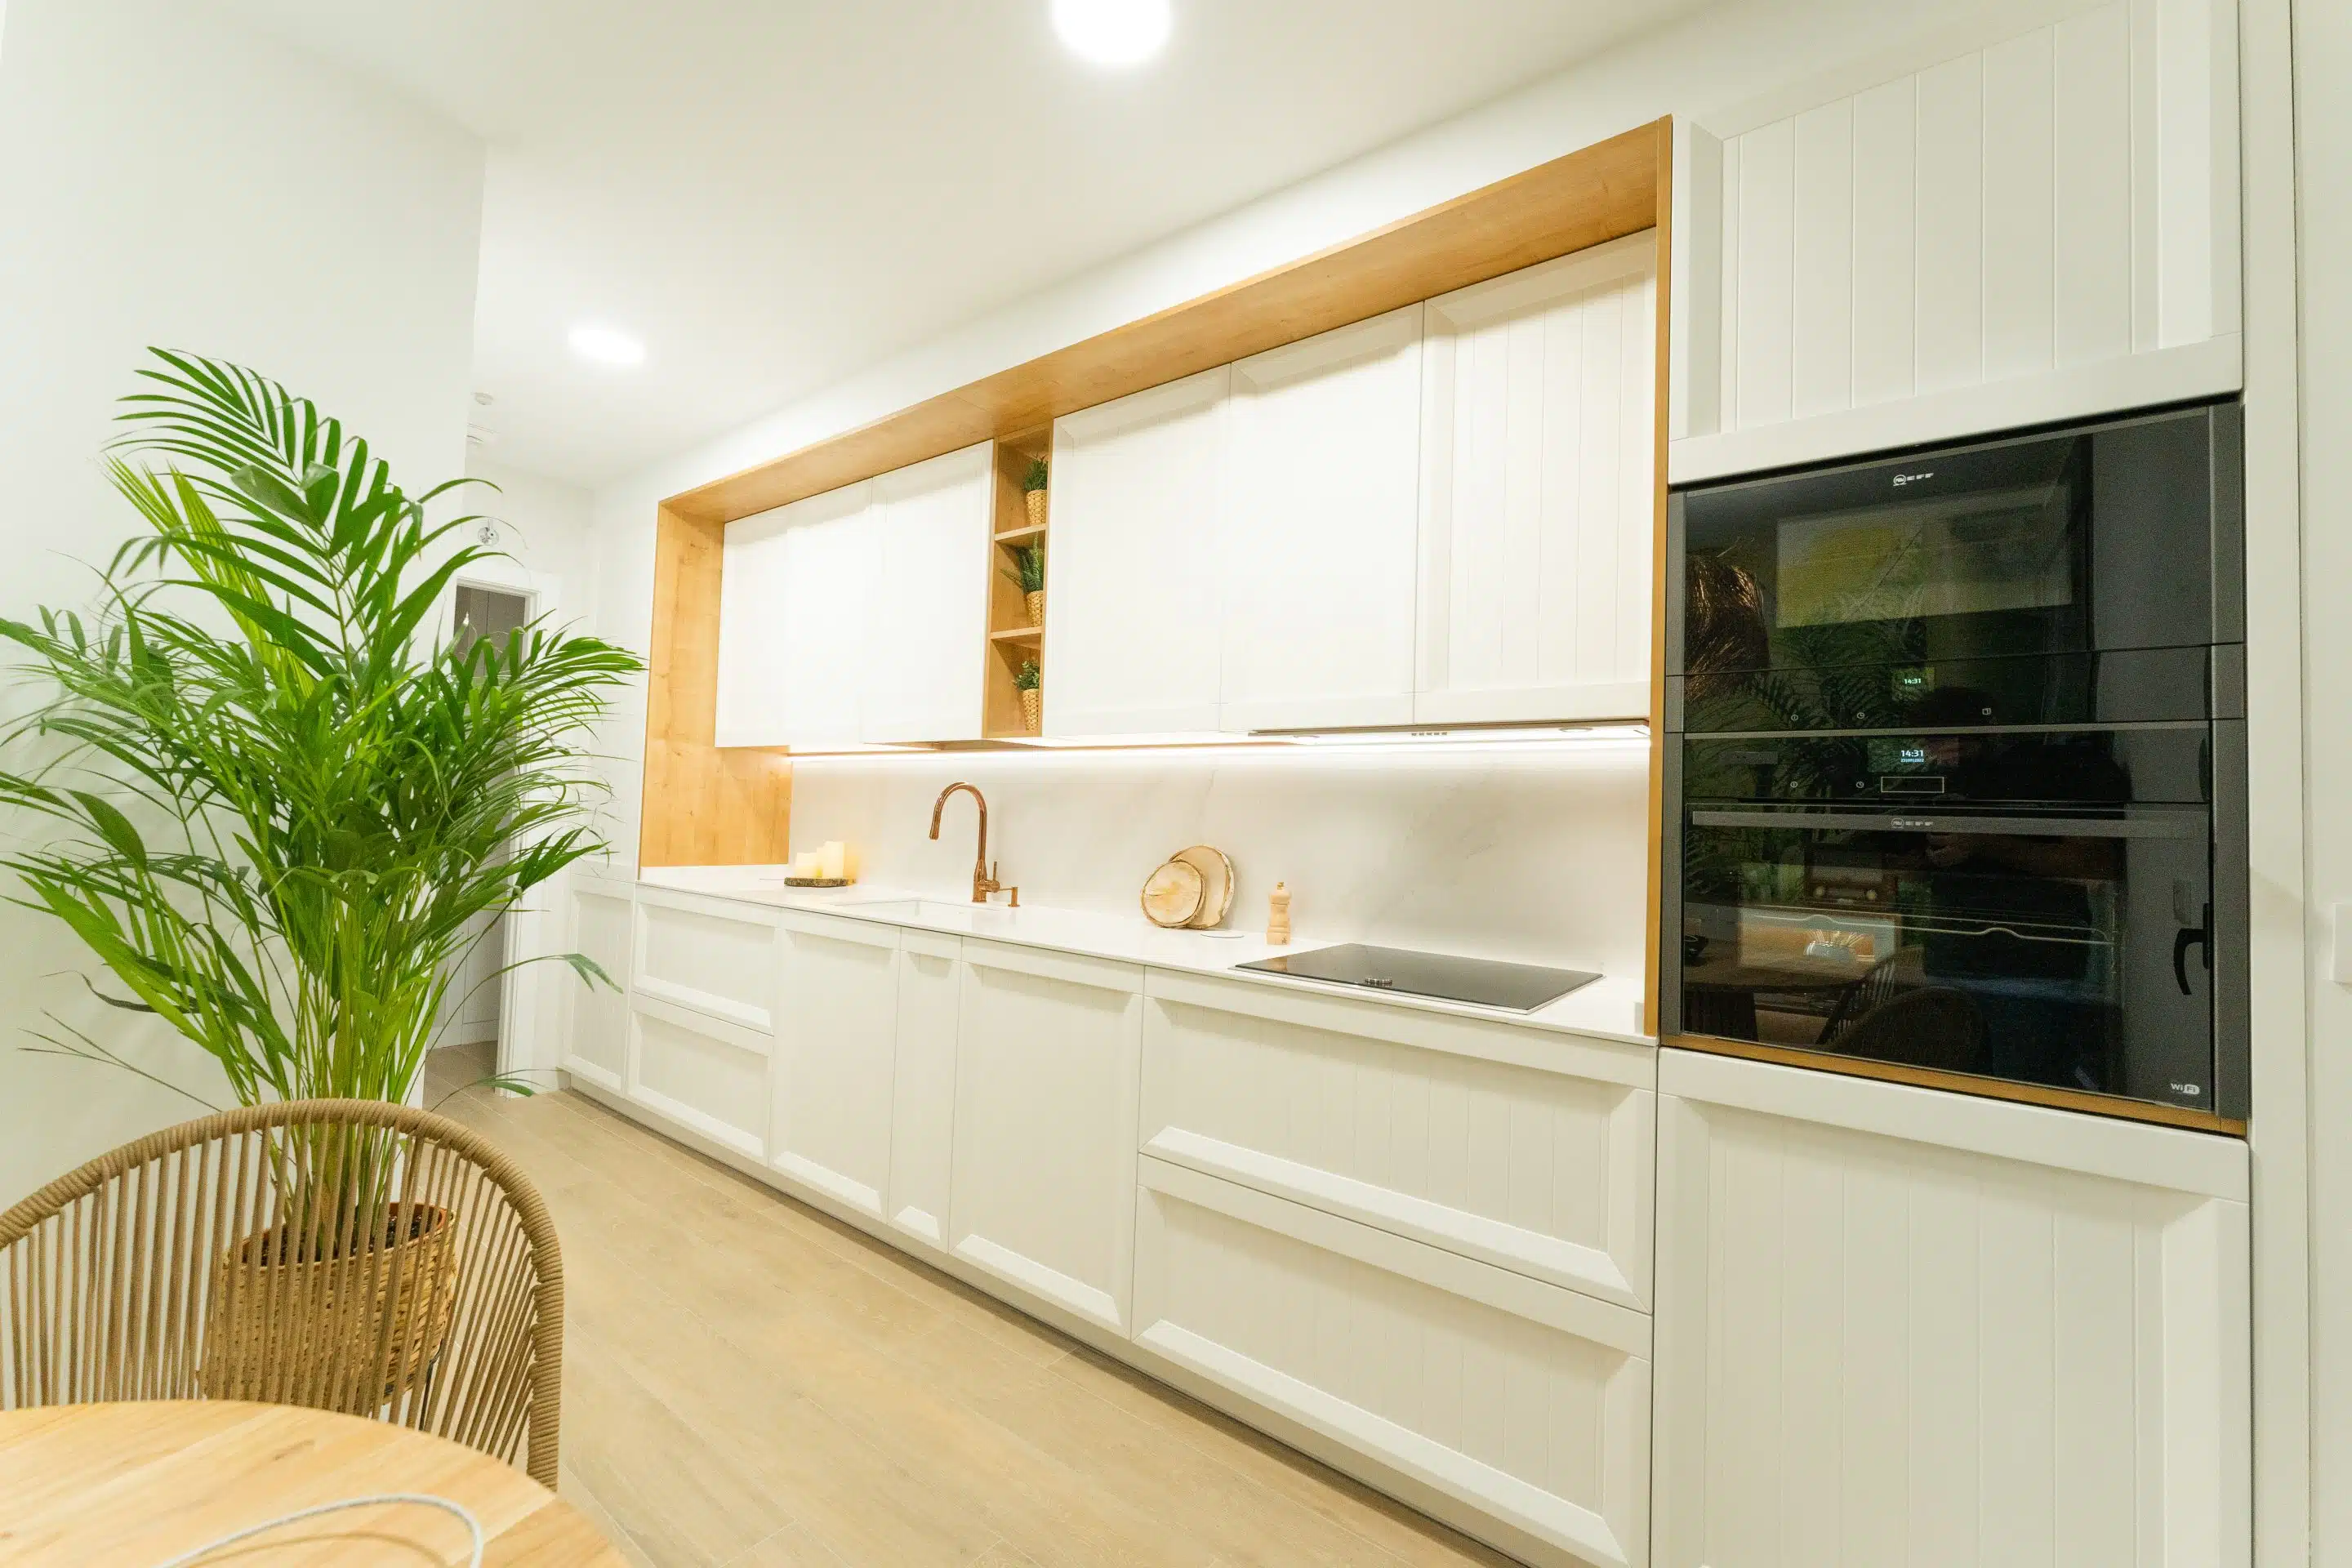 Vista lateral de esta cocina blanca clásica con estilos nórdicos donde la madera remarca el espacio y los hornos integrados rompen con el diseño para modernizar la composición